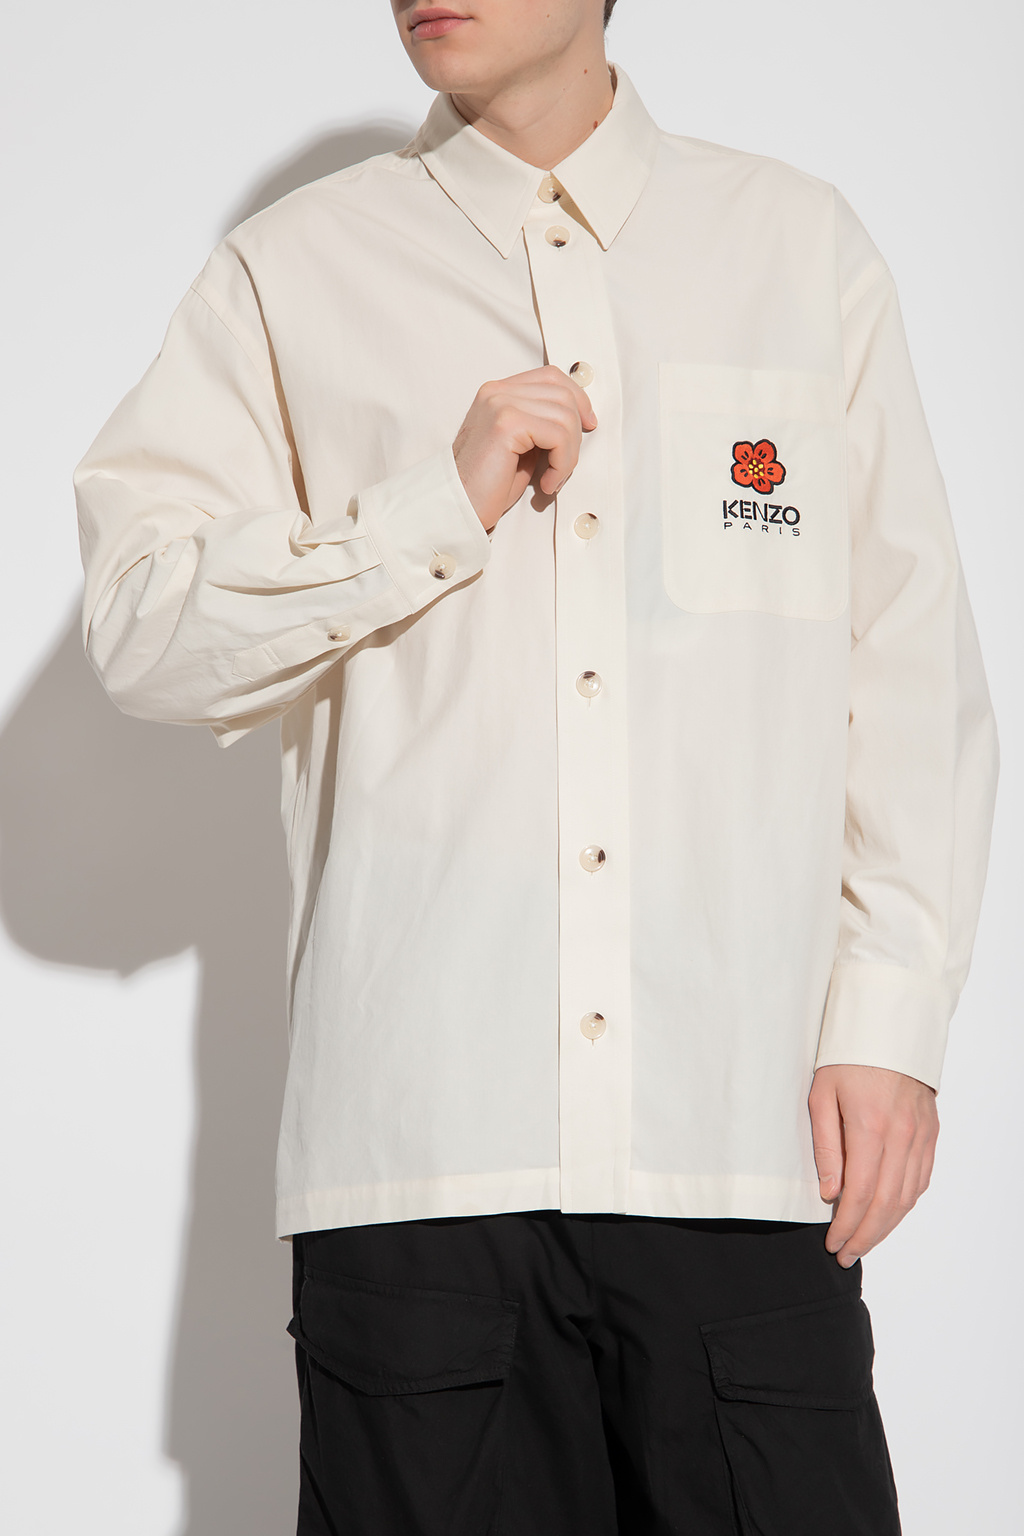 Kenzo Oversize Sleeveless shirt